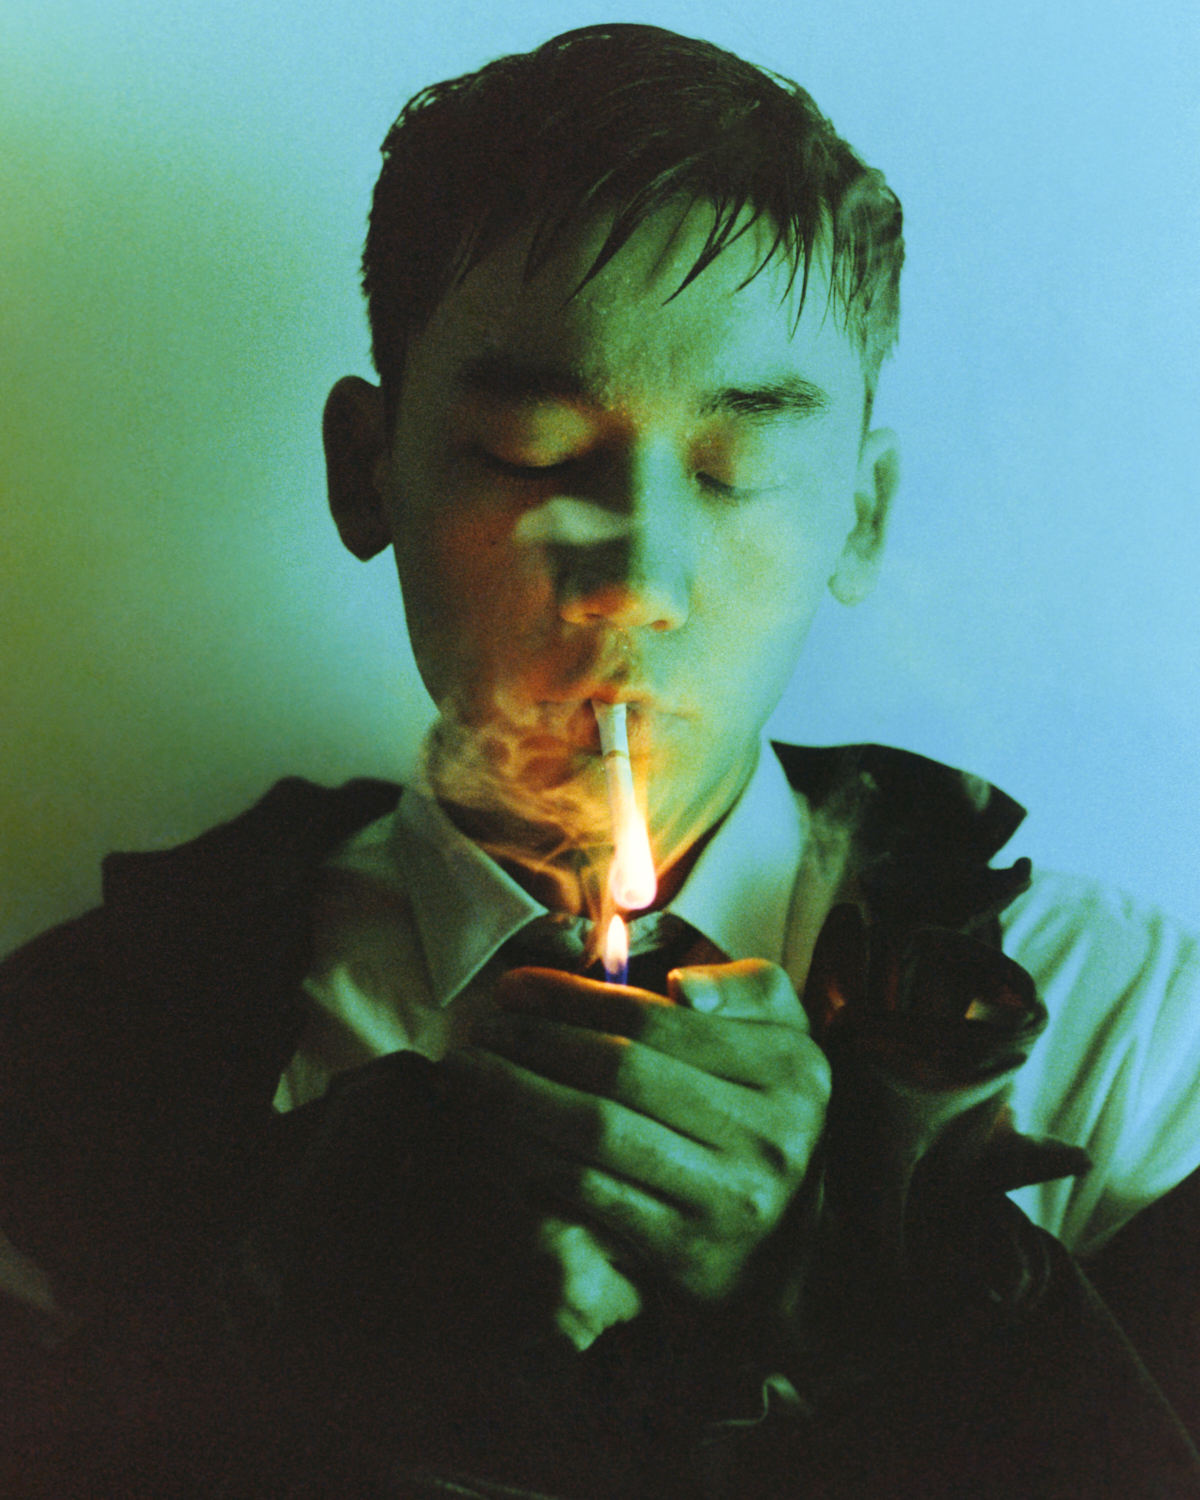 a man lights a cigarette under blue light